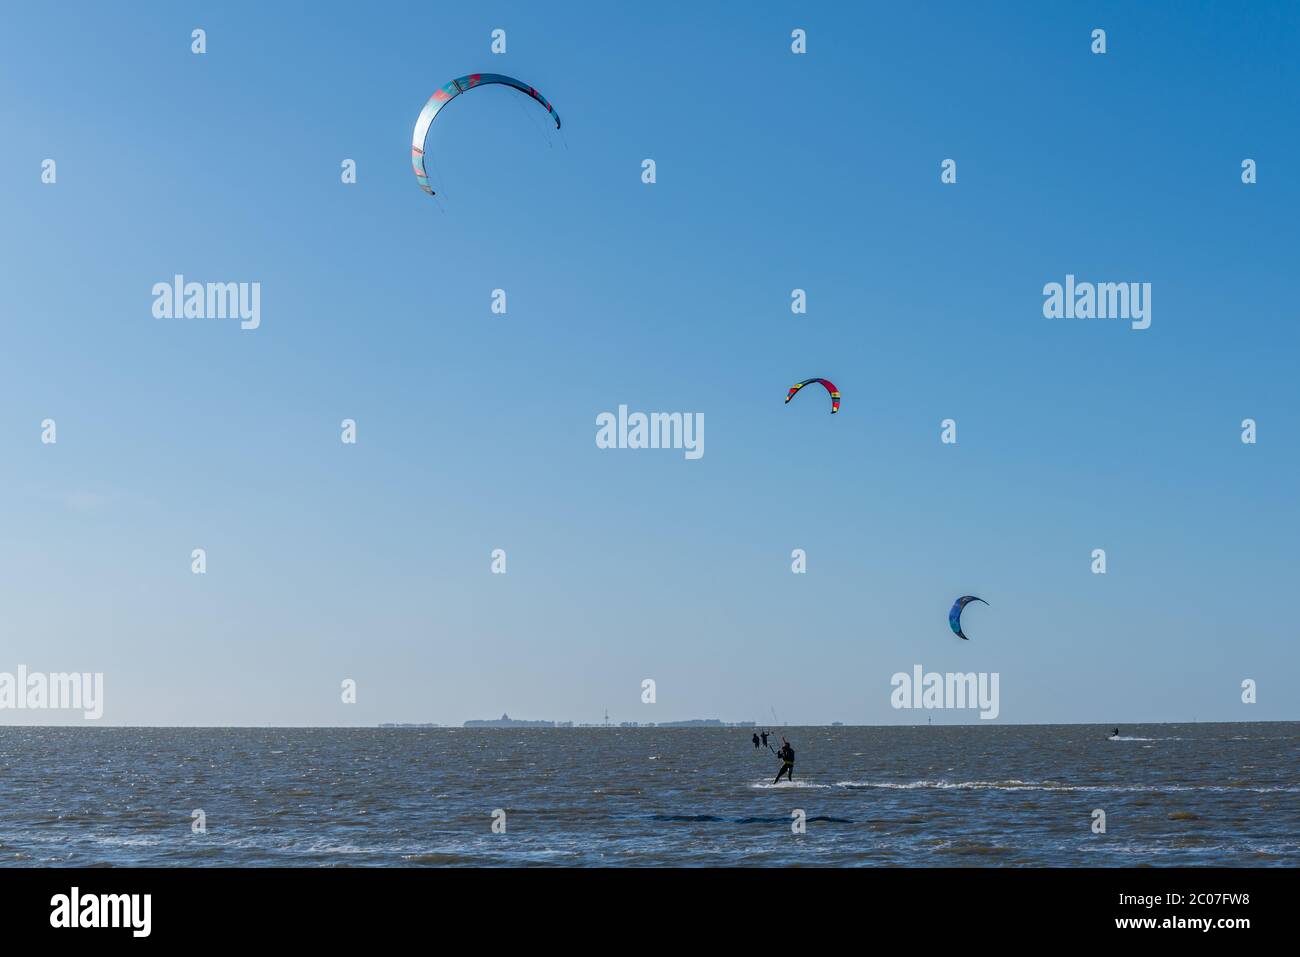 Ideale Bedingungen für Kitesurfen an der Nordsee, Cuxhaven-Sahlenburg, Insel Neuwerk am Horizont, Niedersachsen, Norddeutschland Stockfoto